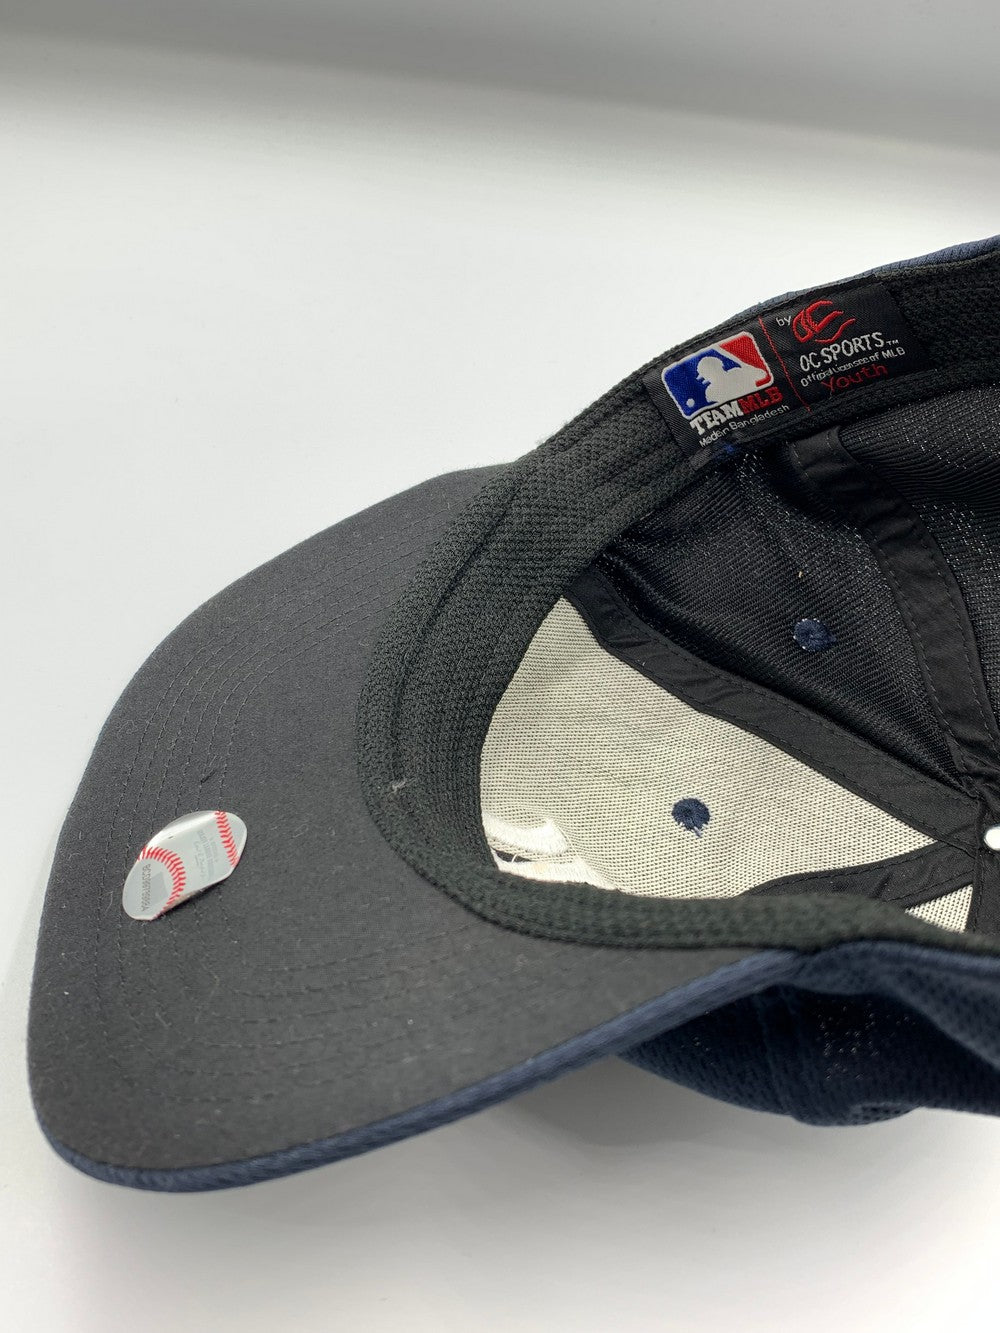 OC Sports Branded Original Branded Caps For Men